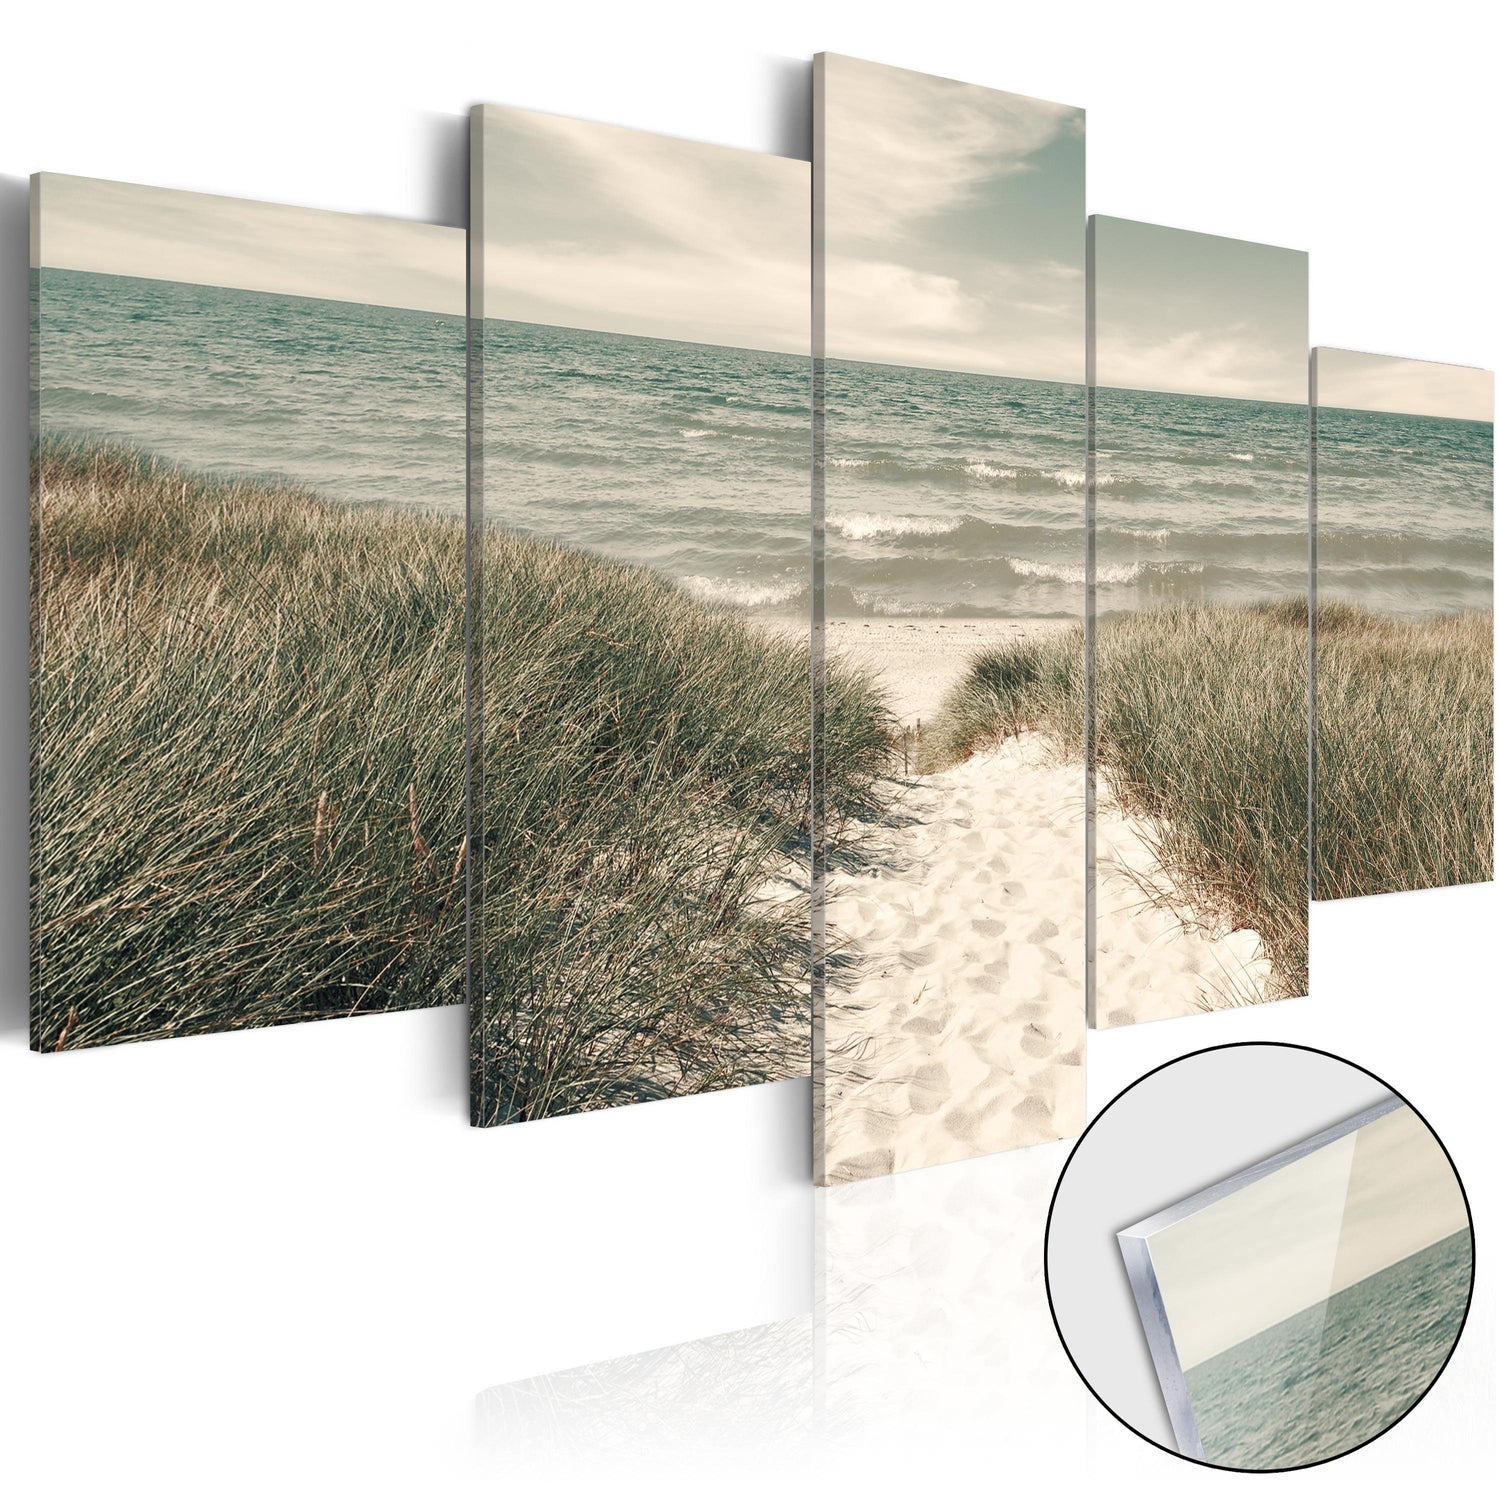 Tavla i akrylglas - Quiet Beach-Tavla Akrylglas-Artgeist-100x50-peaceofhome.se